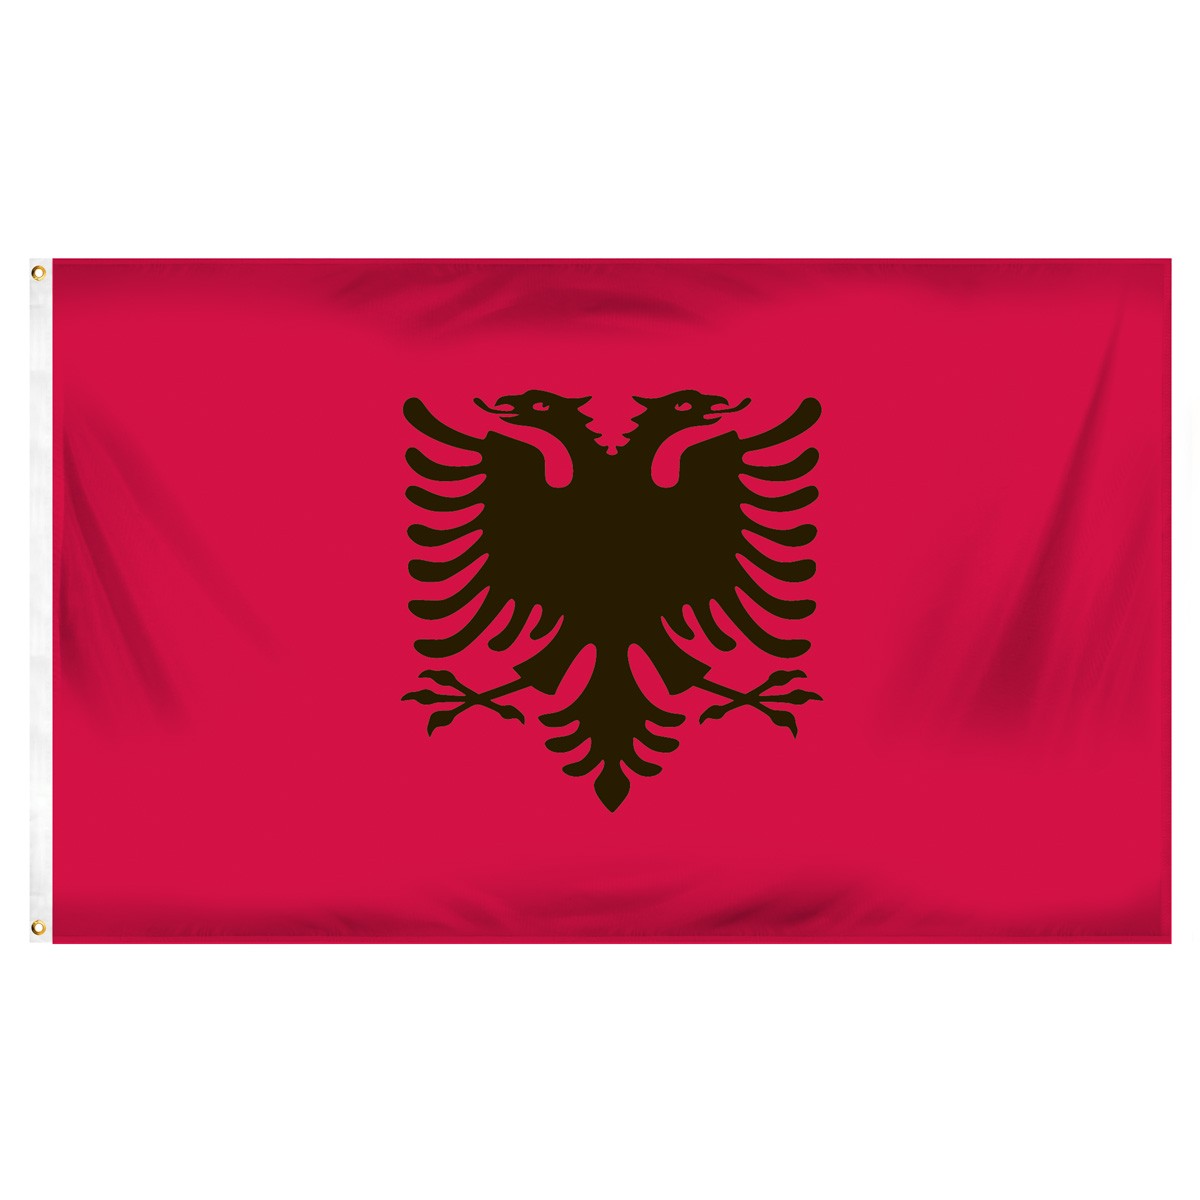 Albania Horizontal Streamers and Flags